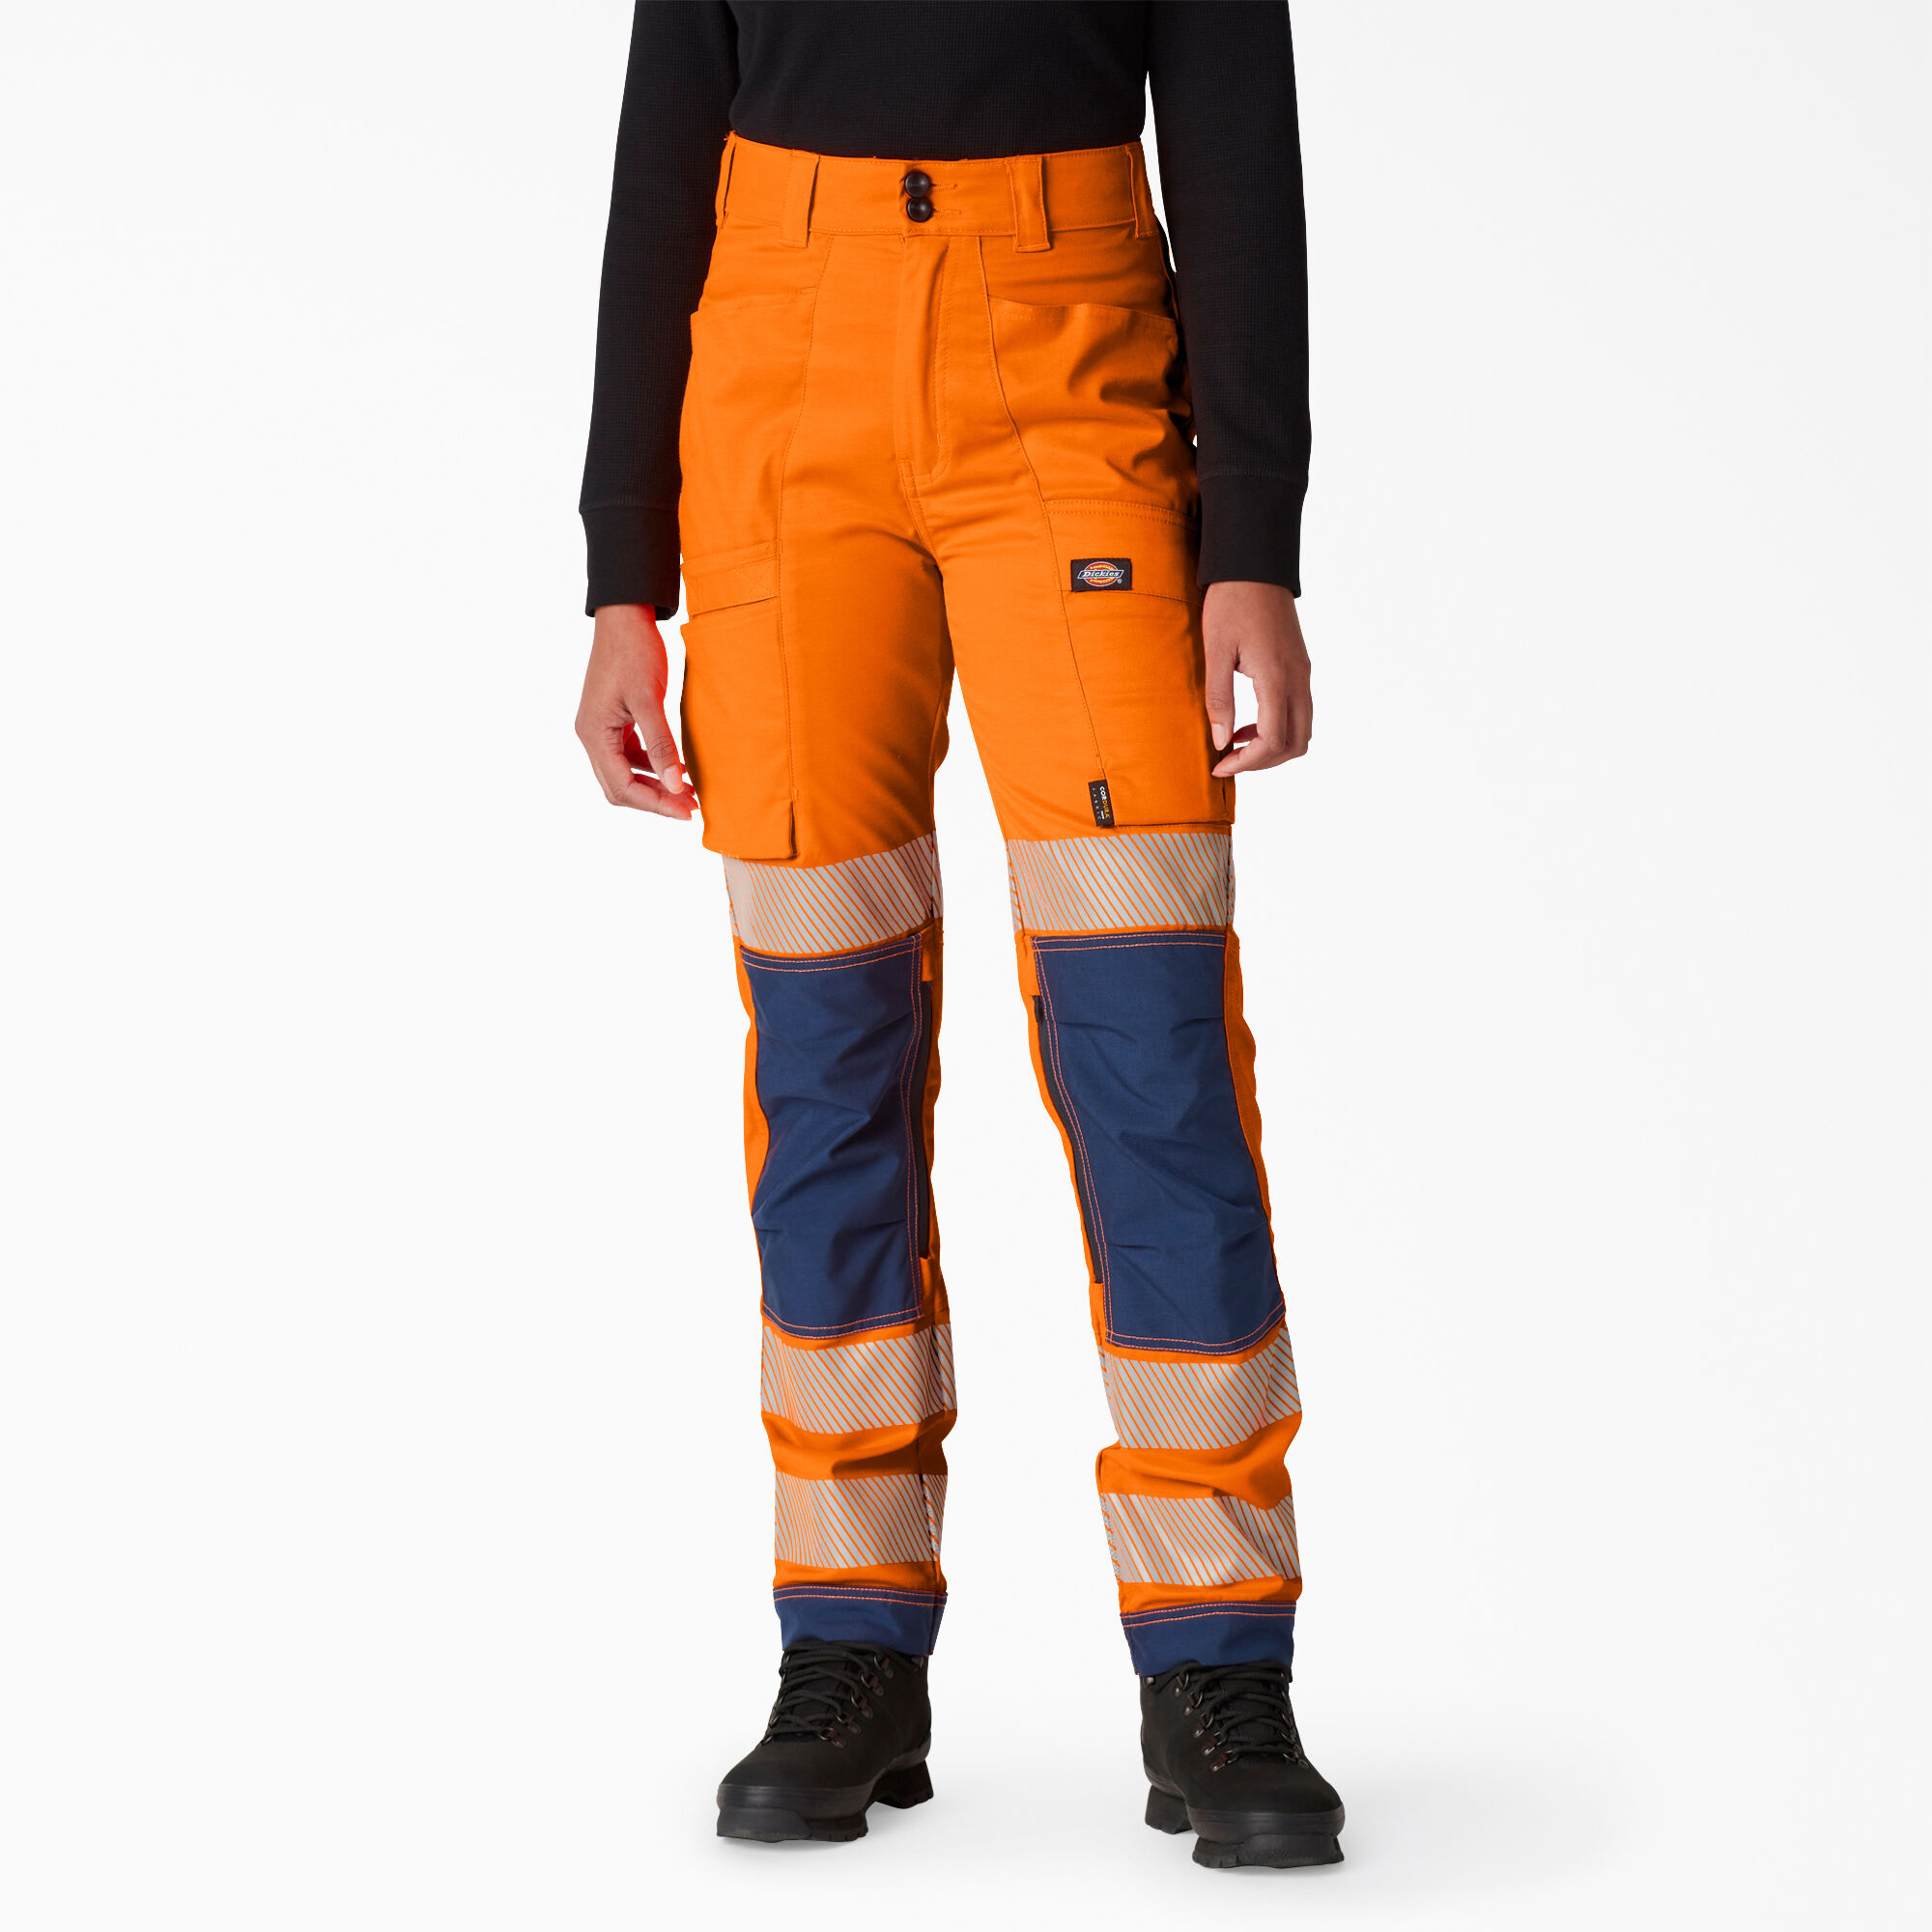 Pants REMAIN Woman color Orange